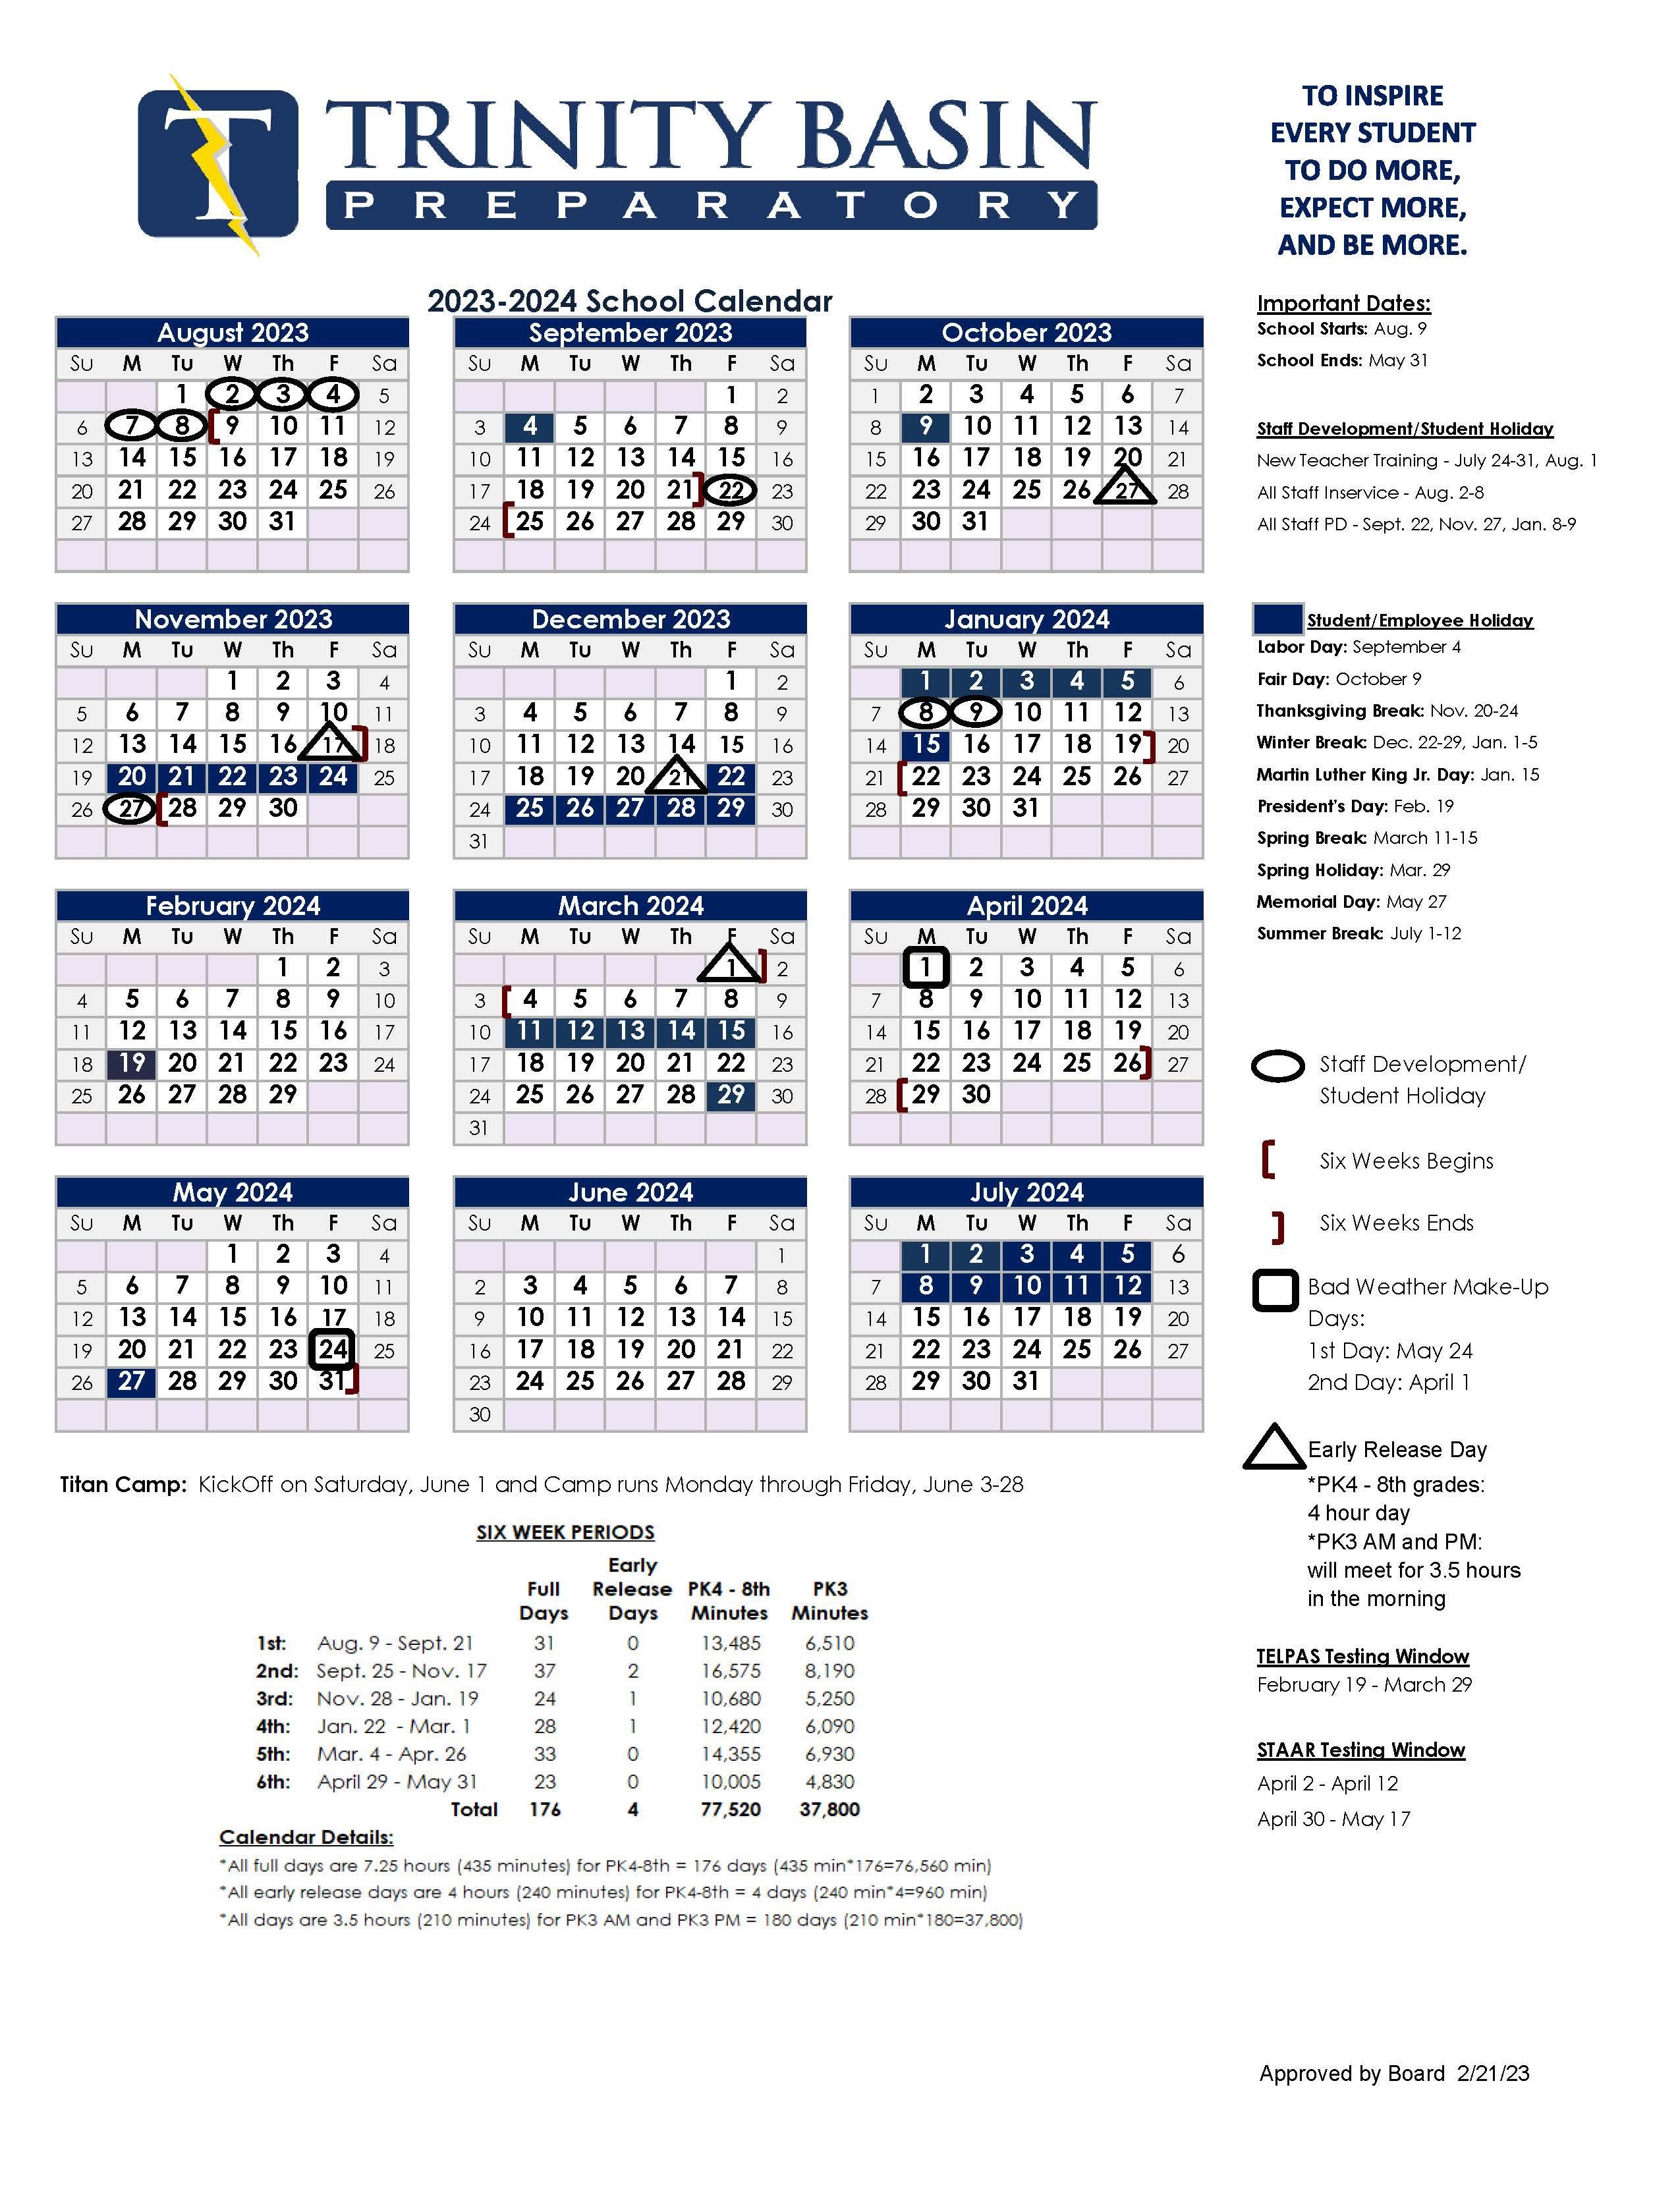 2023-2024 TBP Academic Calendar